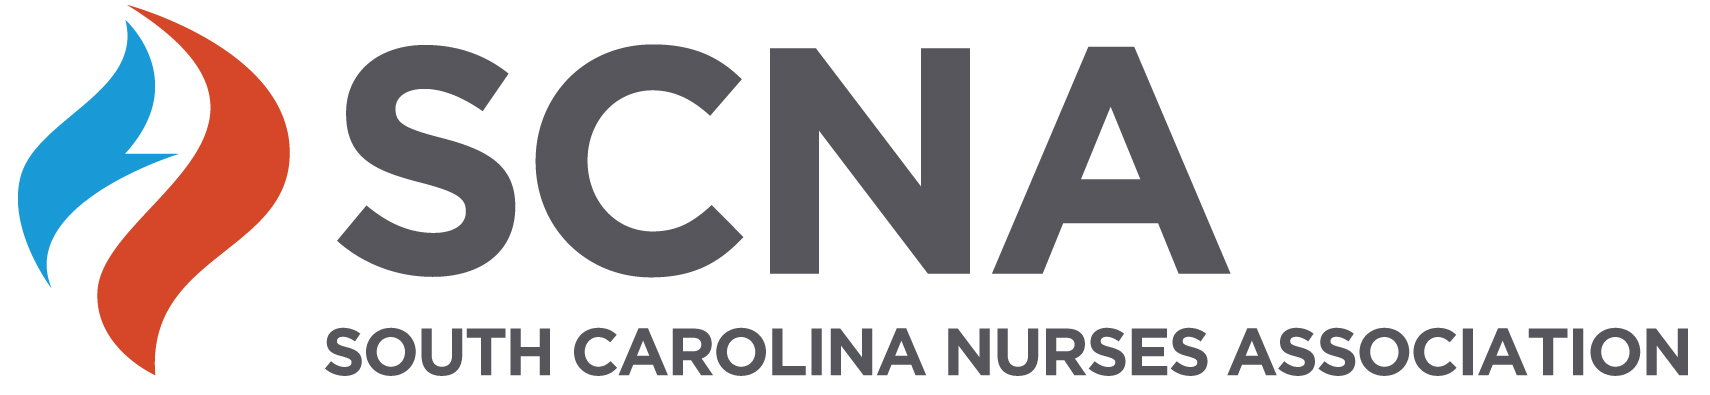 South Carolina Nurses Association logo